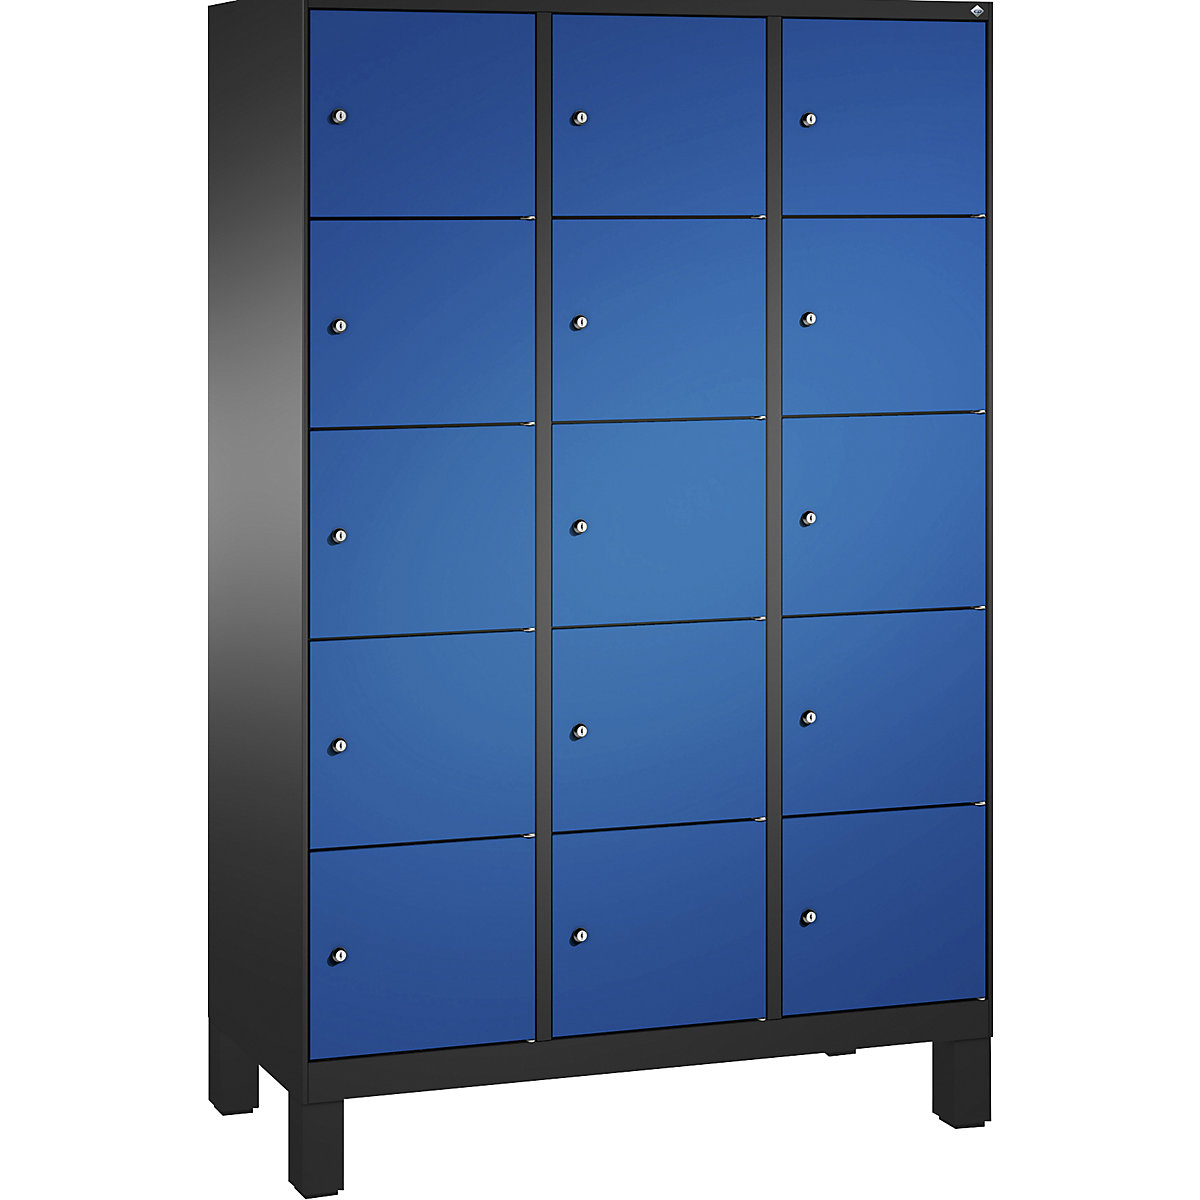 Armoire à casiers sur pieds EVOLO – C+P, 3 compartiments, 5 casiers chacun, largeur compartiments 400 mm, gris noir / bleu gentiane-11